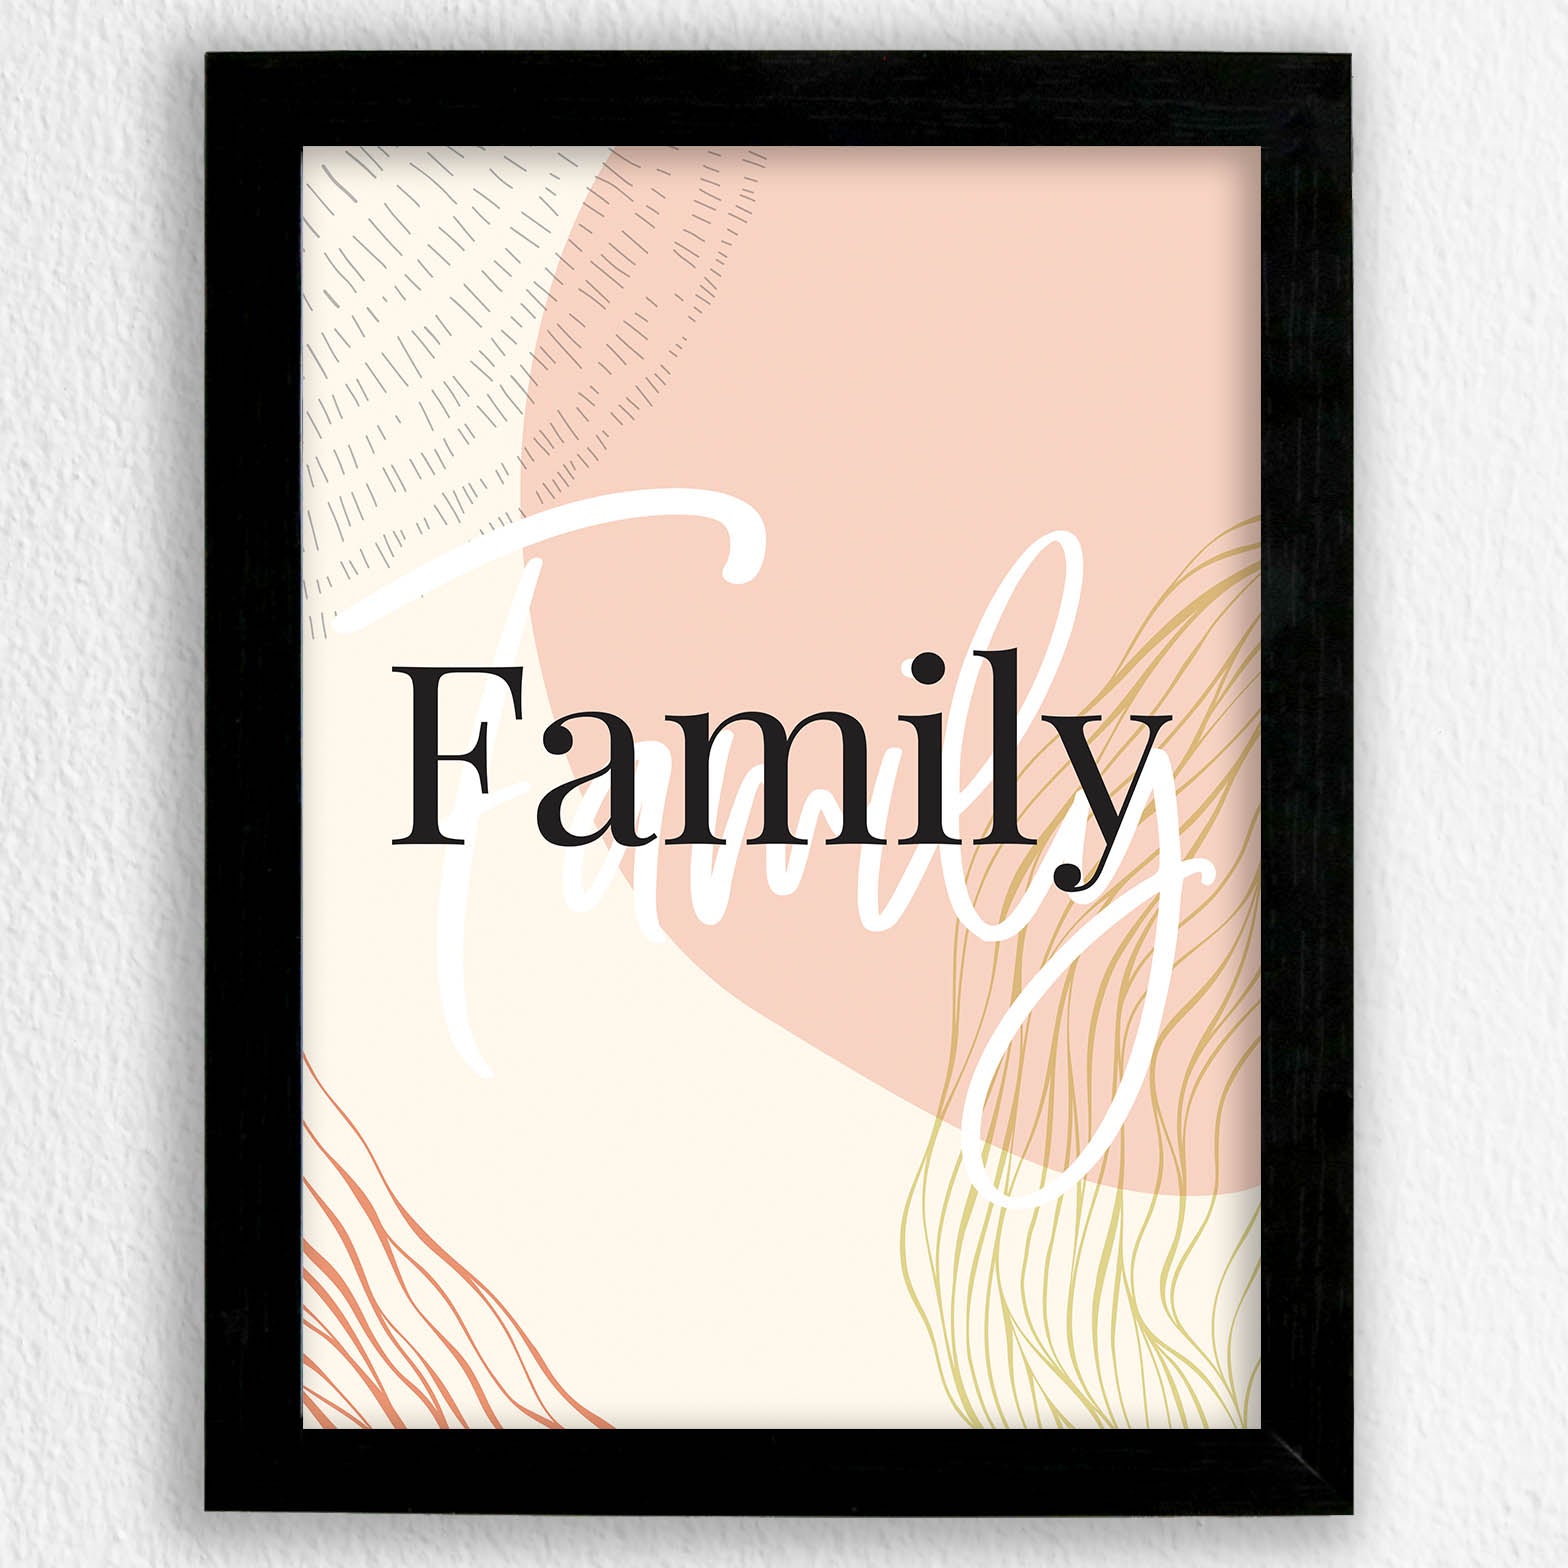 Family - Art Frame